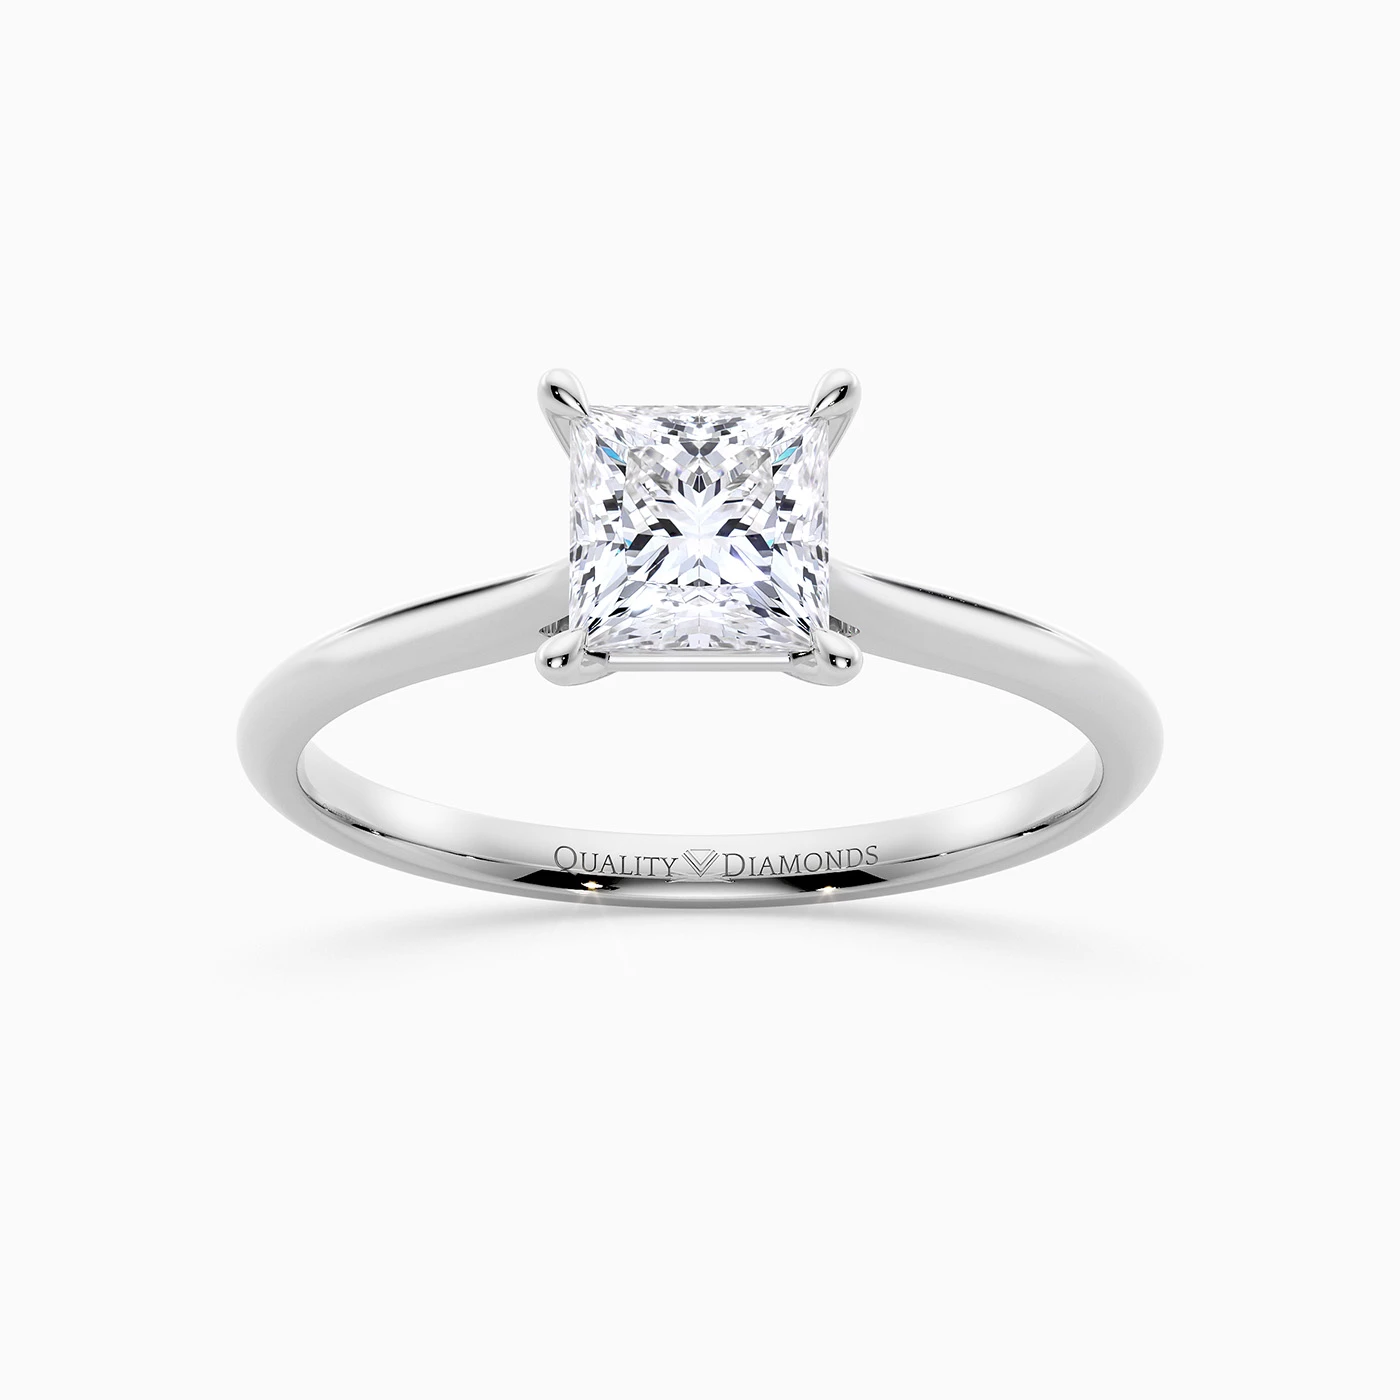 Princess Carys Diamond Ring in Palladium